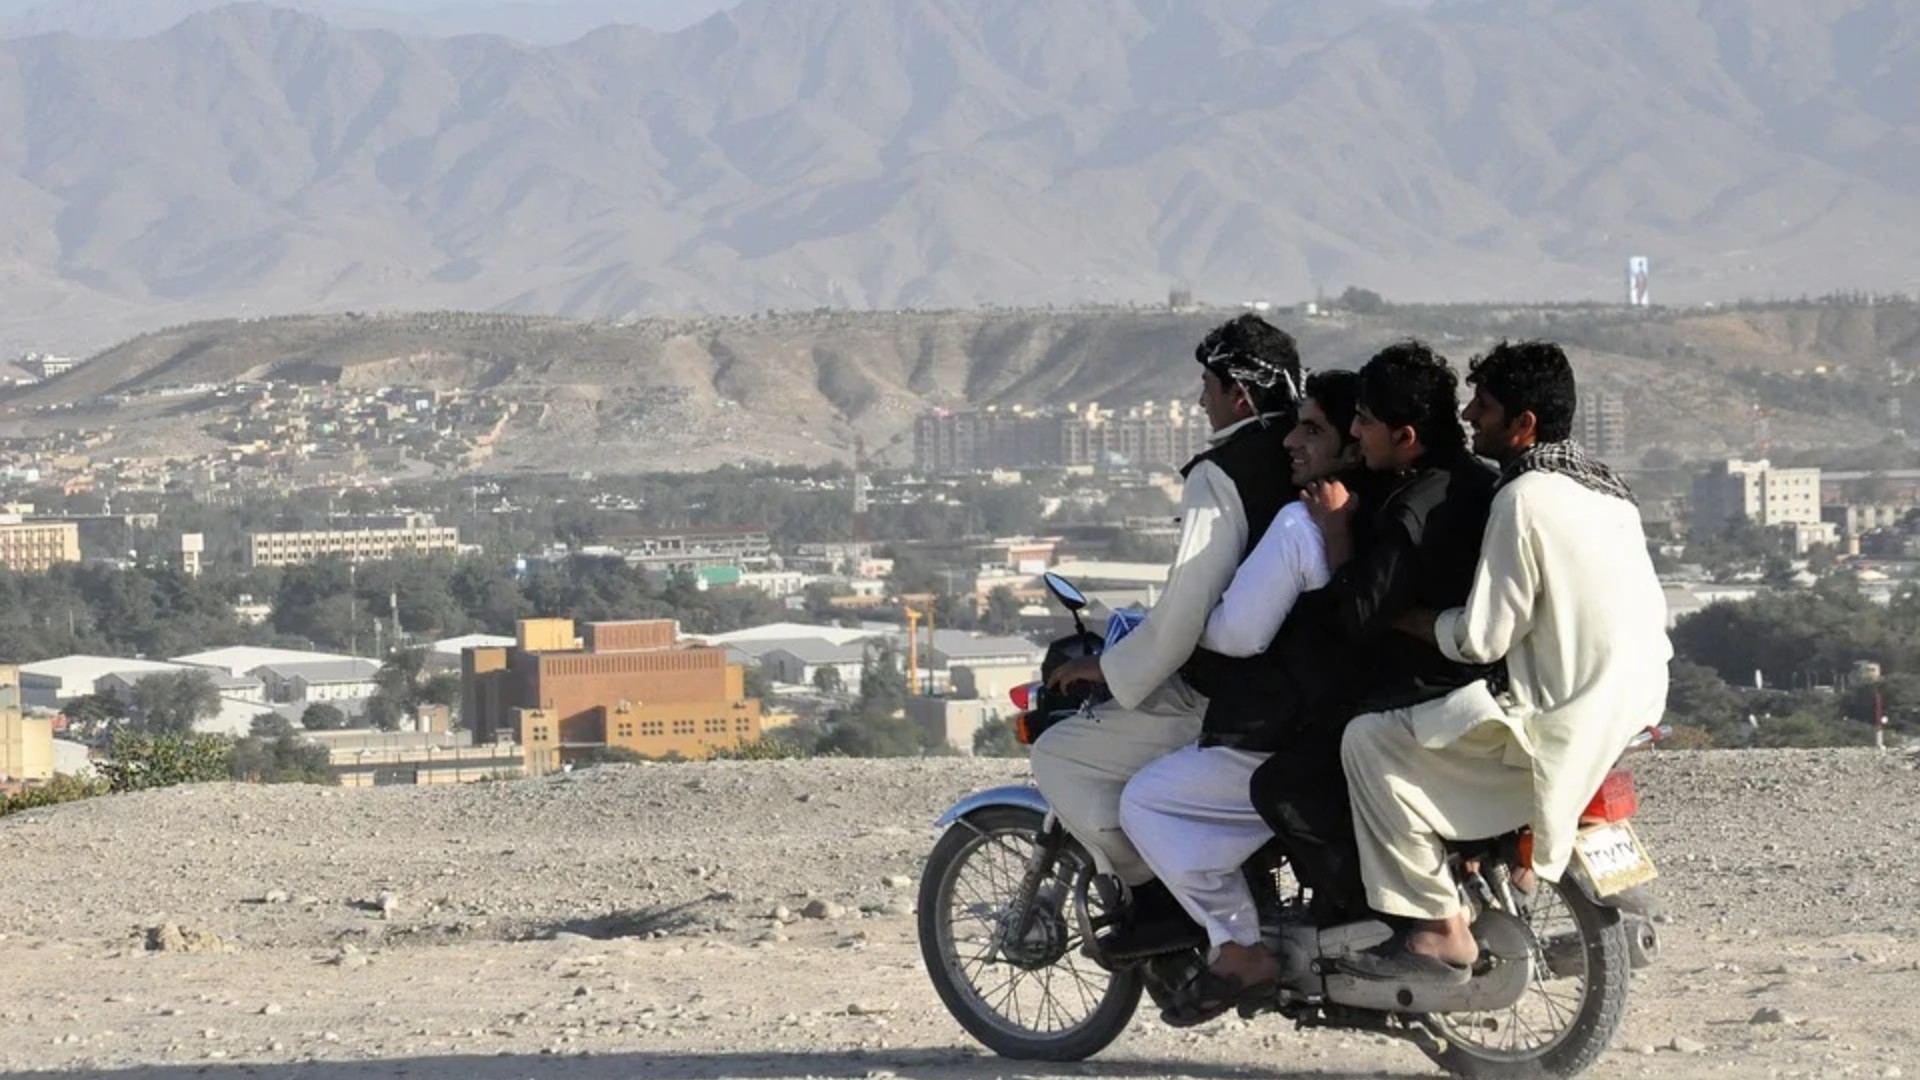 Kaboul en passe d'être prise par les talibans | © pixabay.com